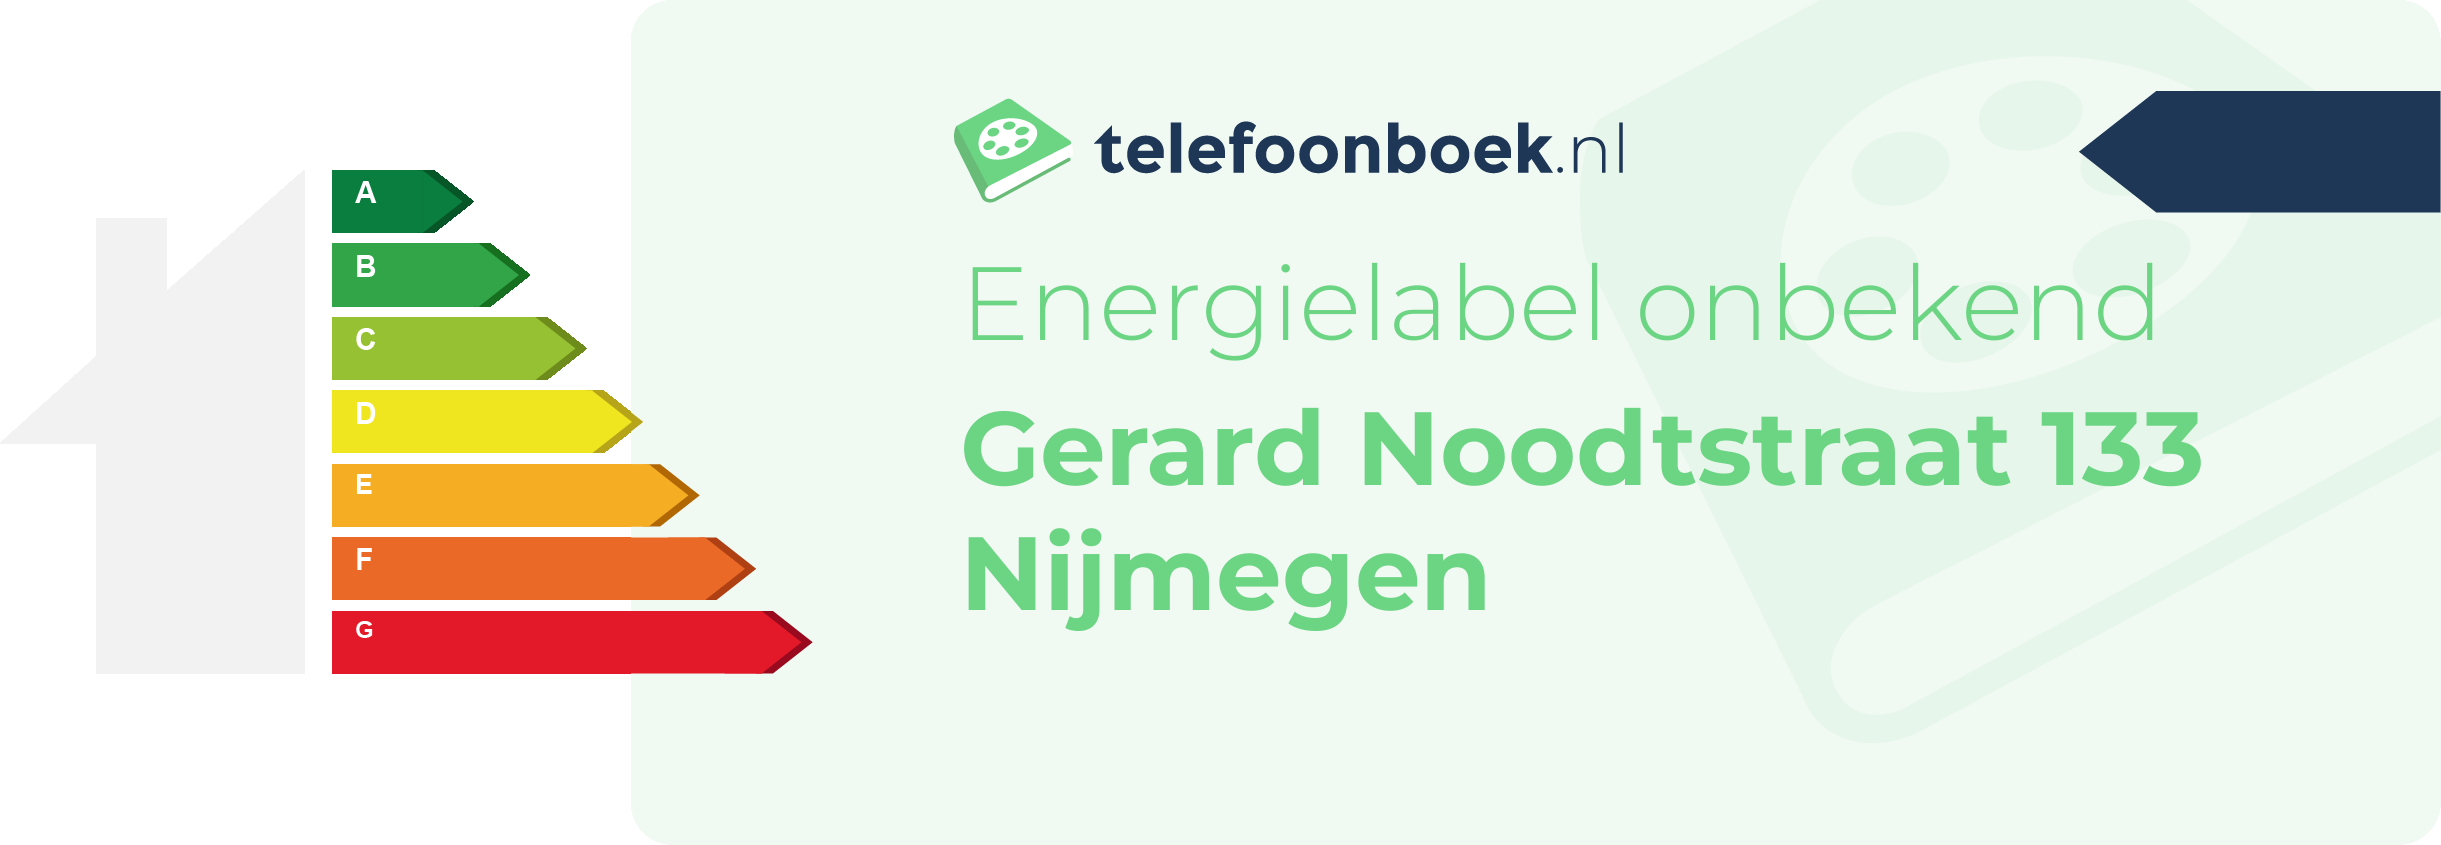 Energielabel Gerard Noodtstraat 133 Nijmegen